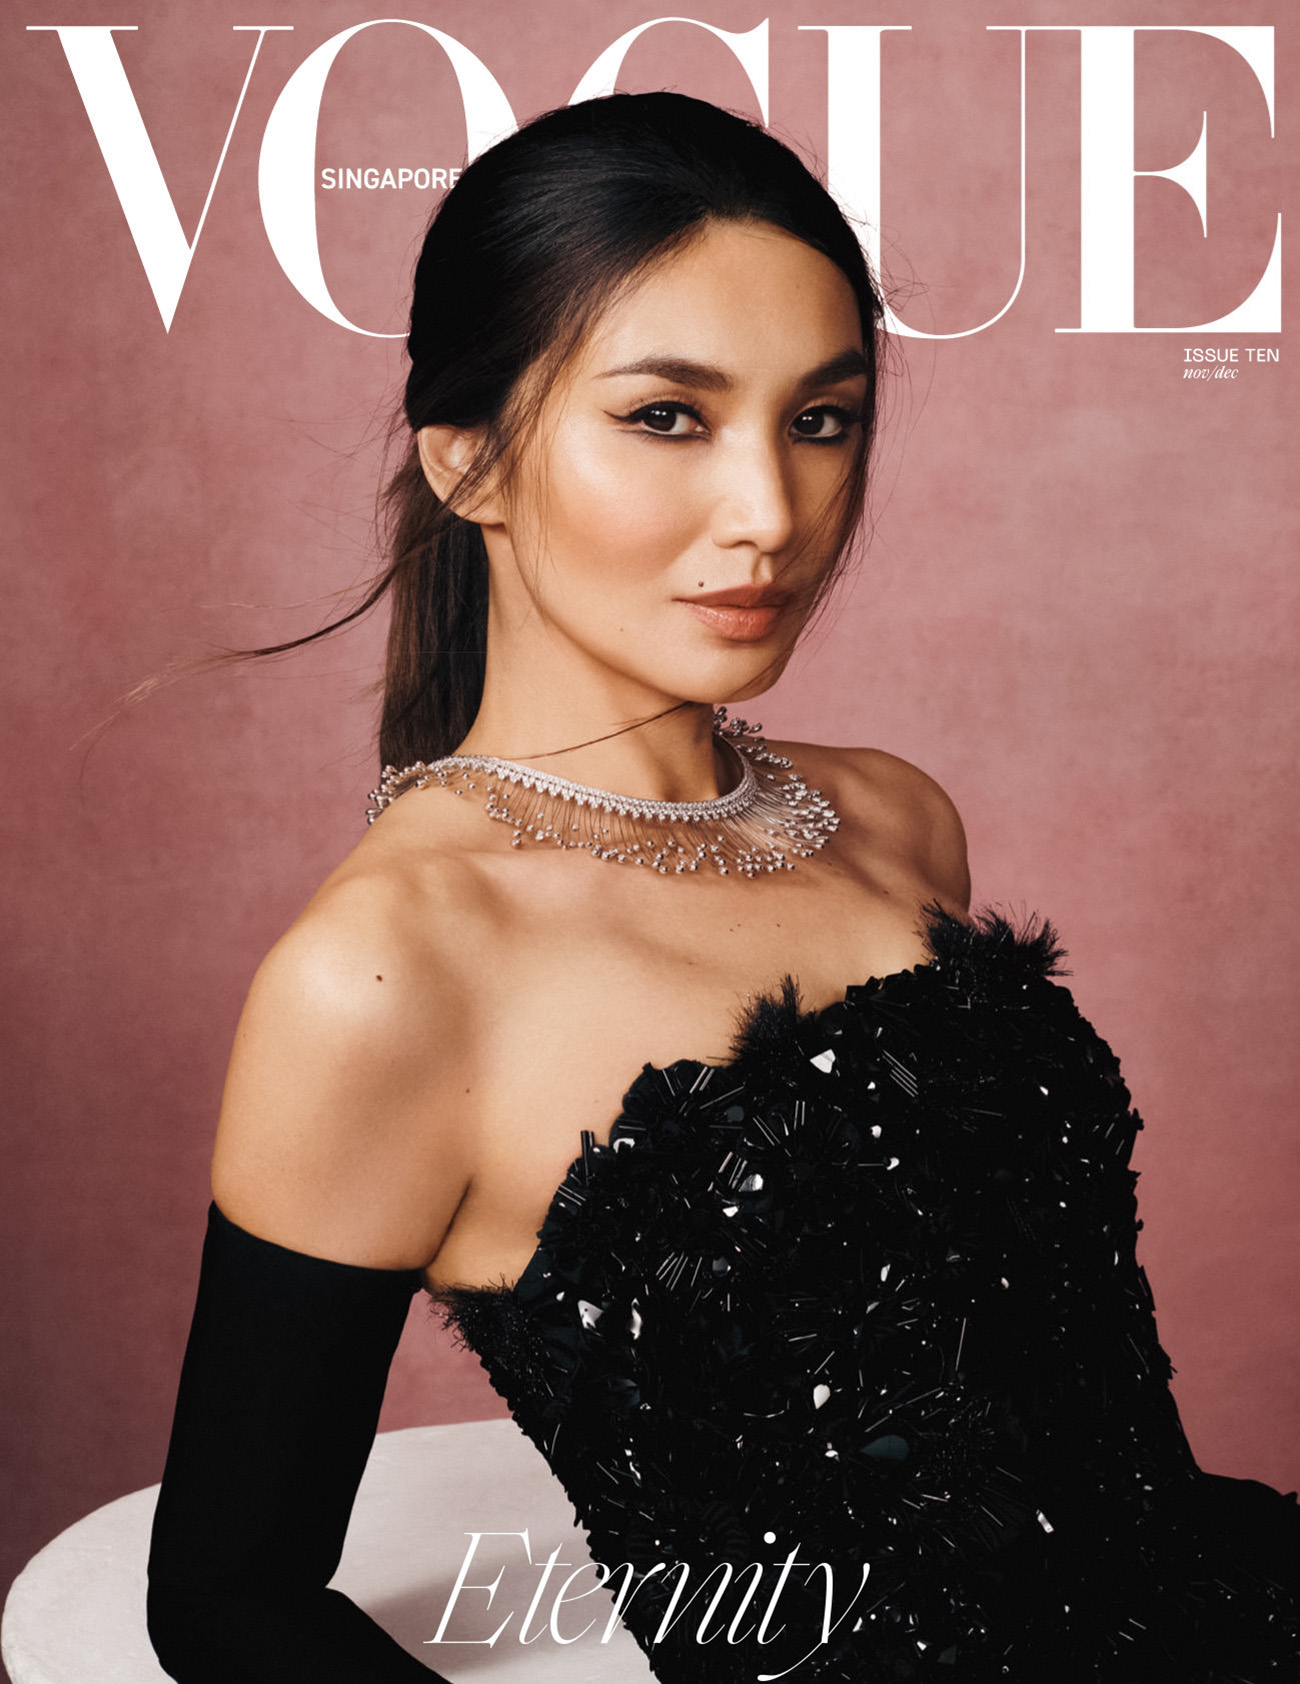 Vogue Singapore - Eleni Oneill